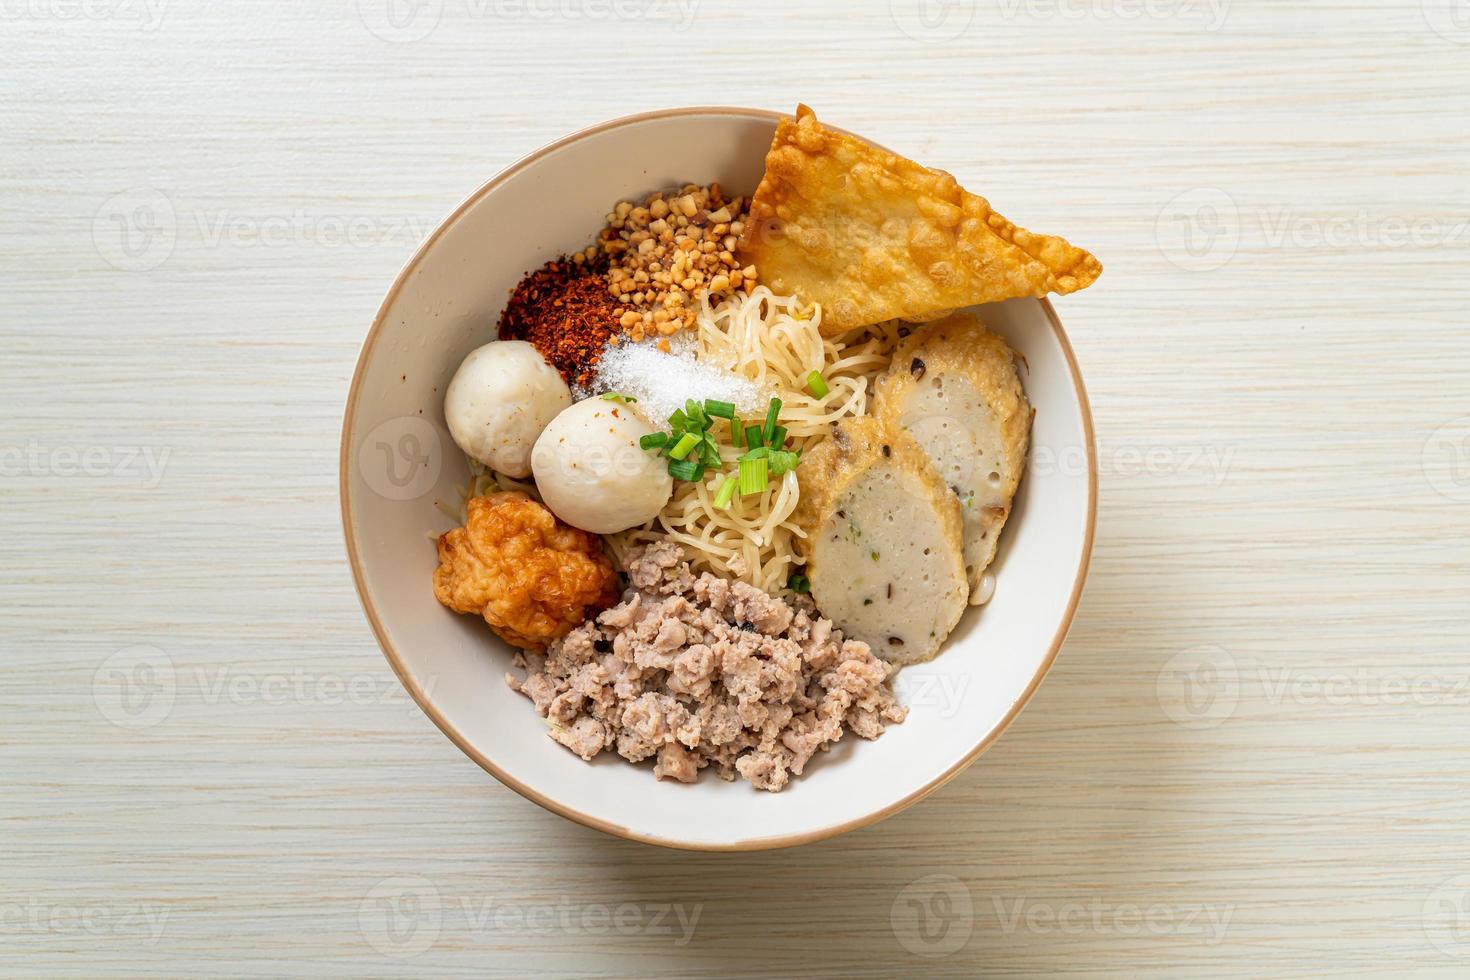 kryddiga äggnudlar med fiskbollar och räkbollar utan soppa - asiatisk matstil foto